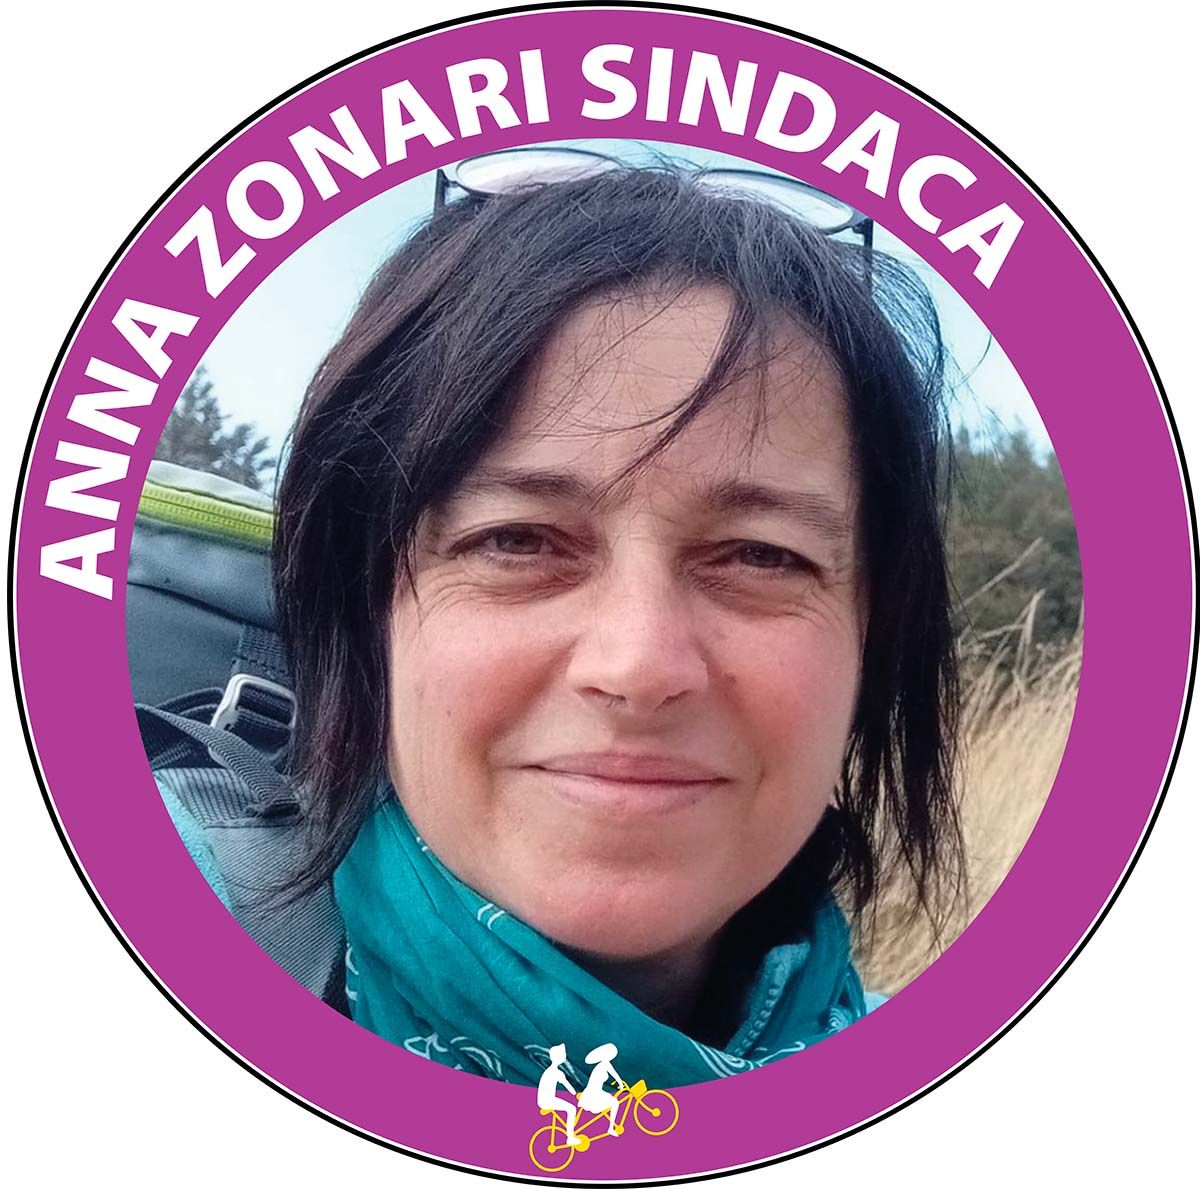 Anna Zonari Sindaca